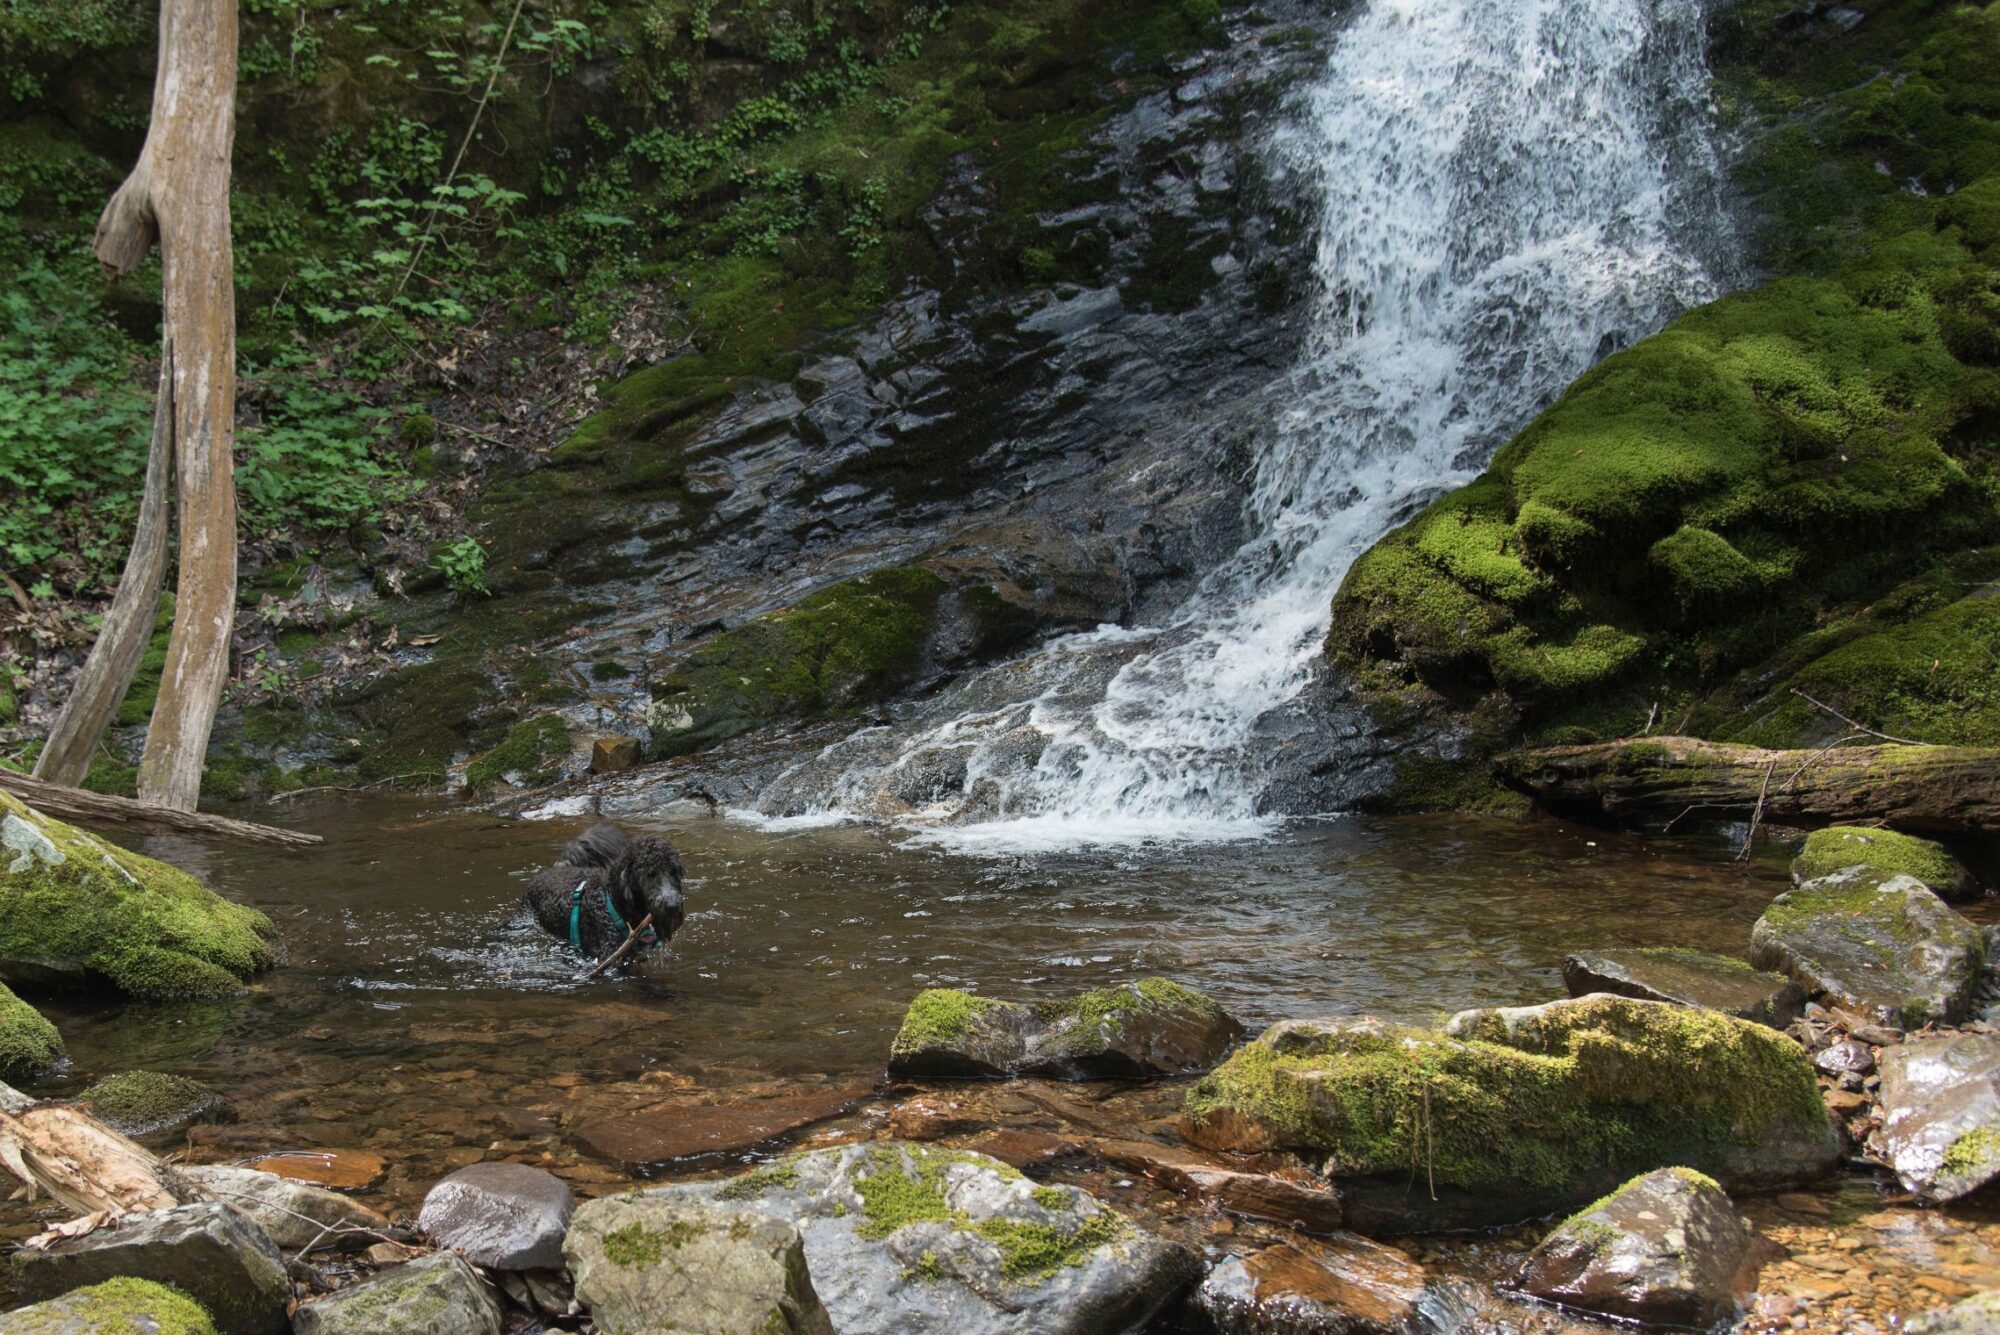 Dog playing at base of waterfall.